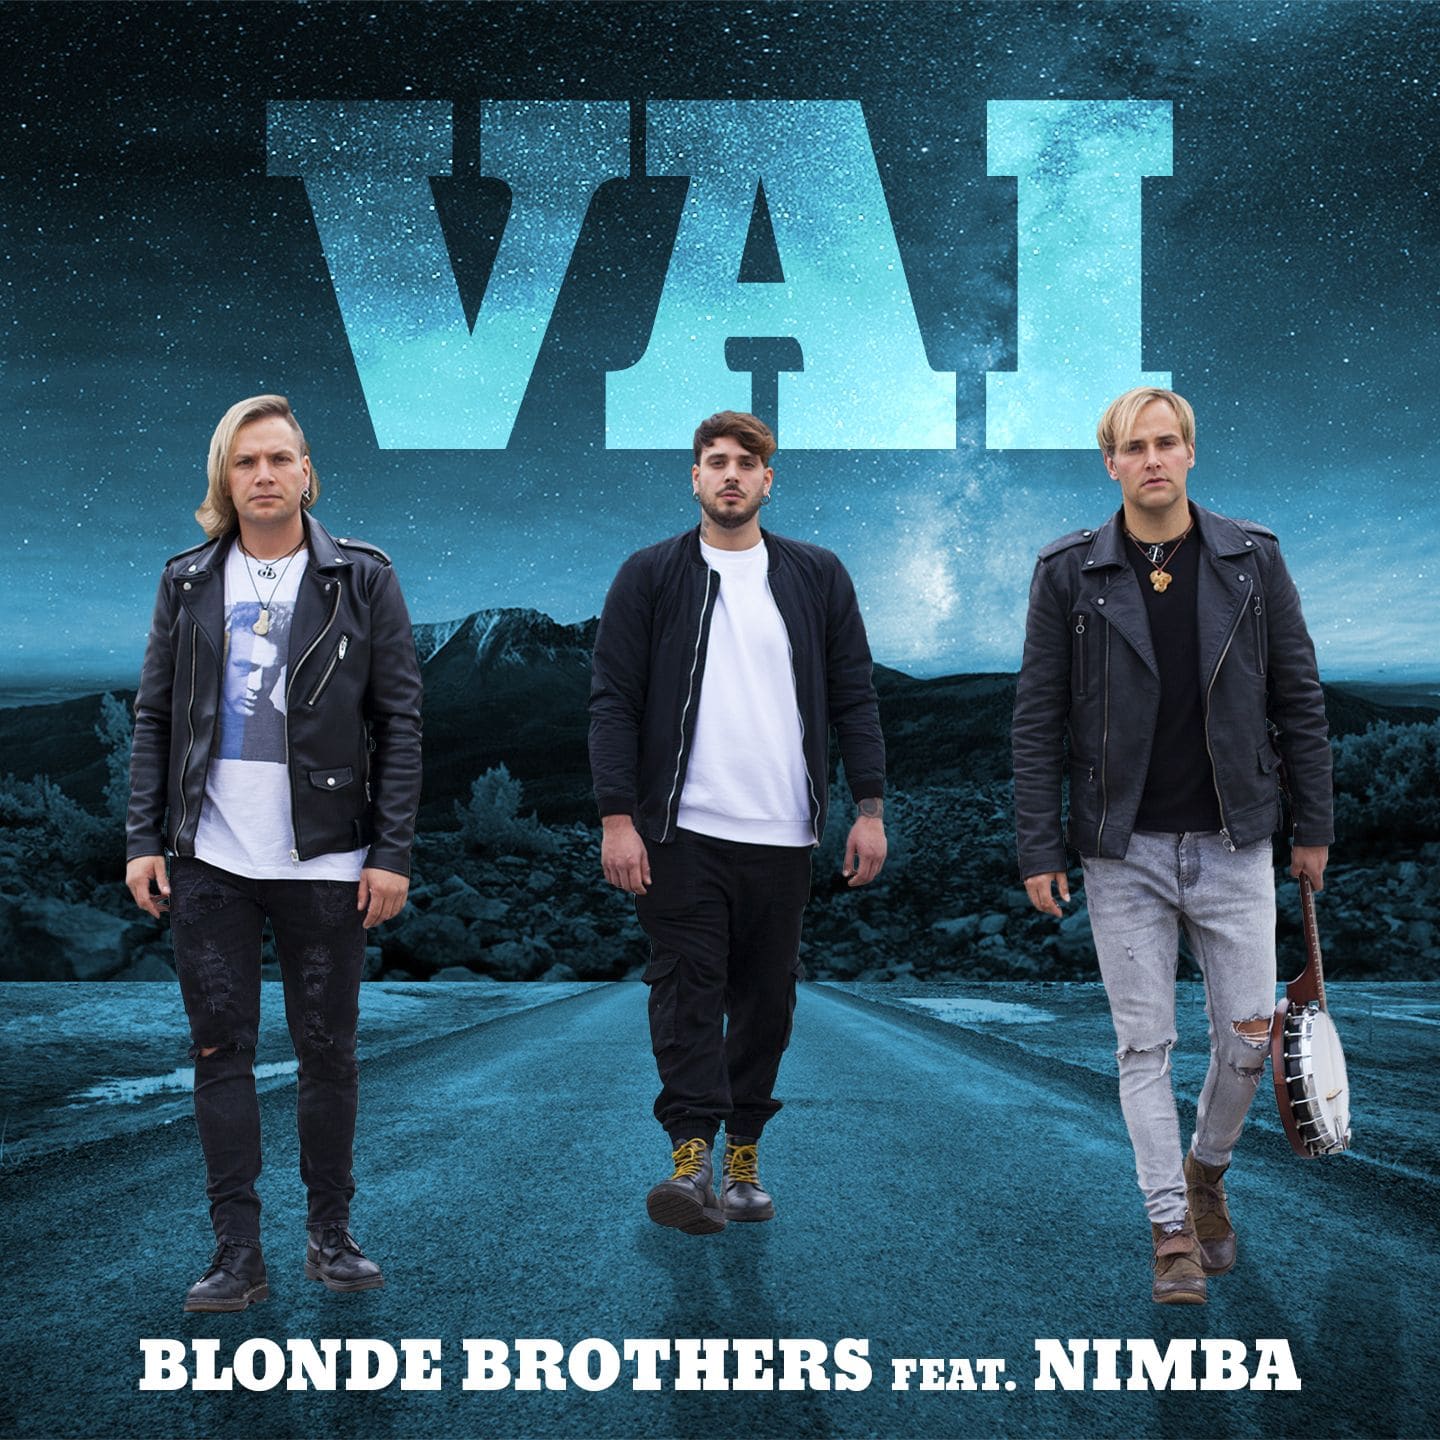 Blonde Brothers Ft. Nimba “Vai”  
Il nuovo brano dei Blonde Brothers ft. Nimba